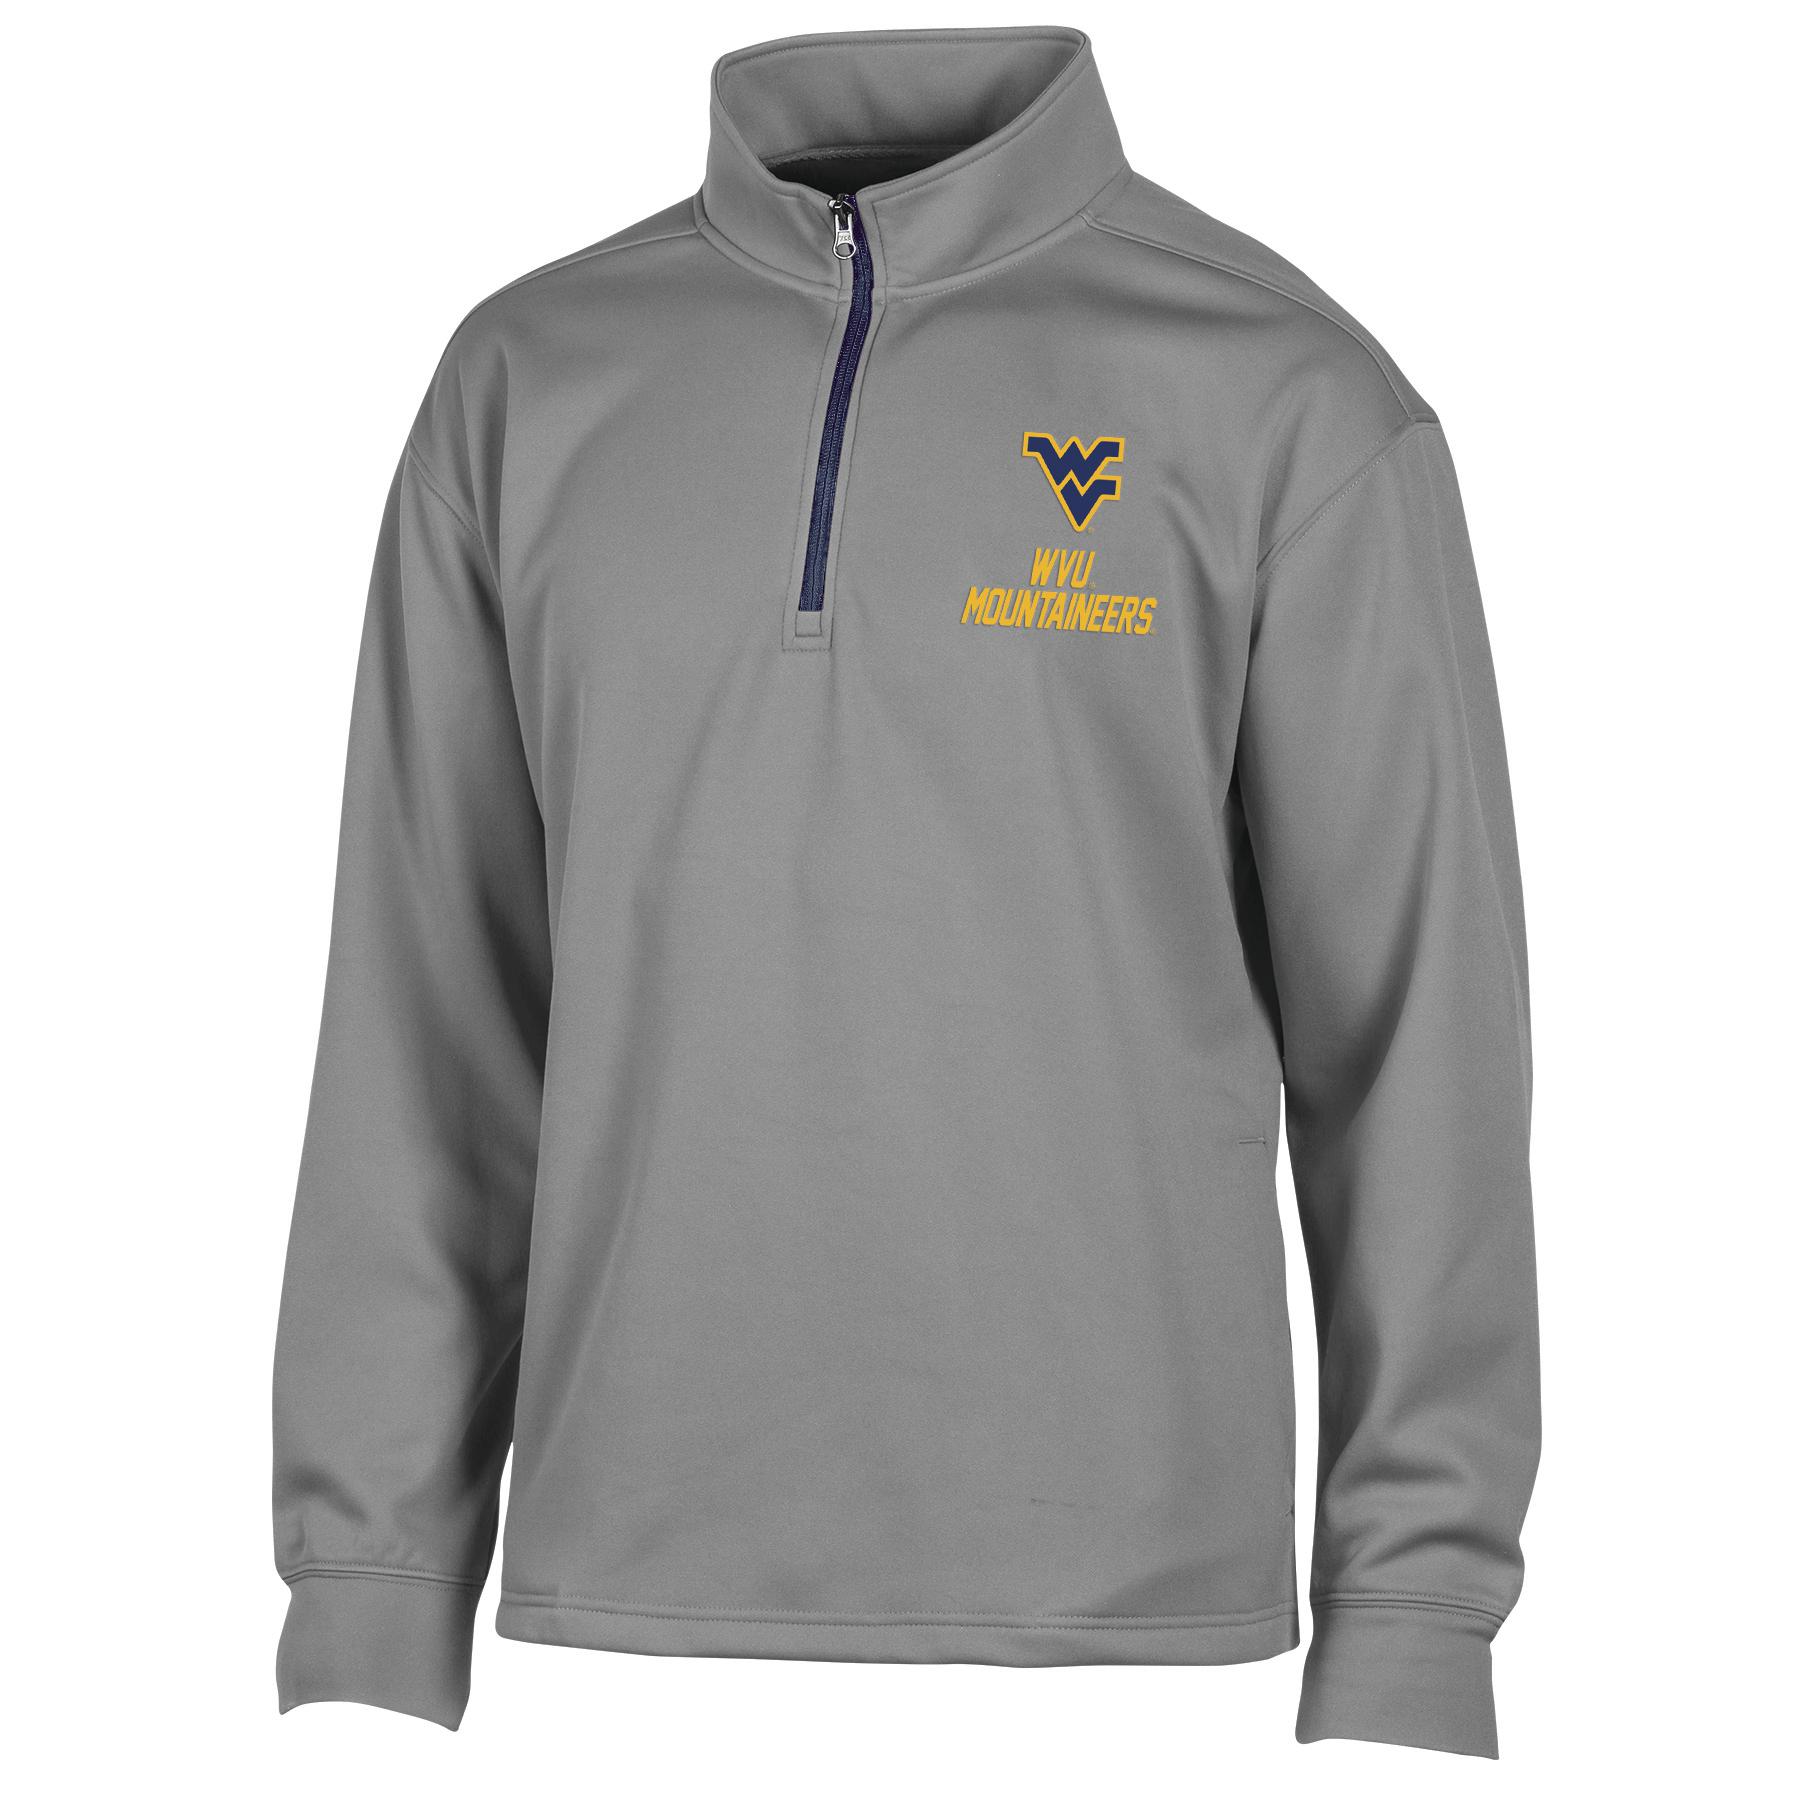 NCAA Men's Quarter-Zip Shirt - West Virginia University Mountaineers